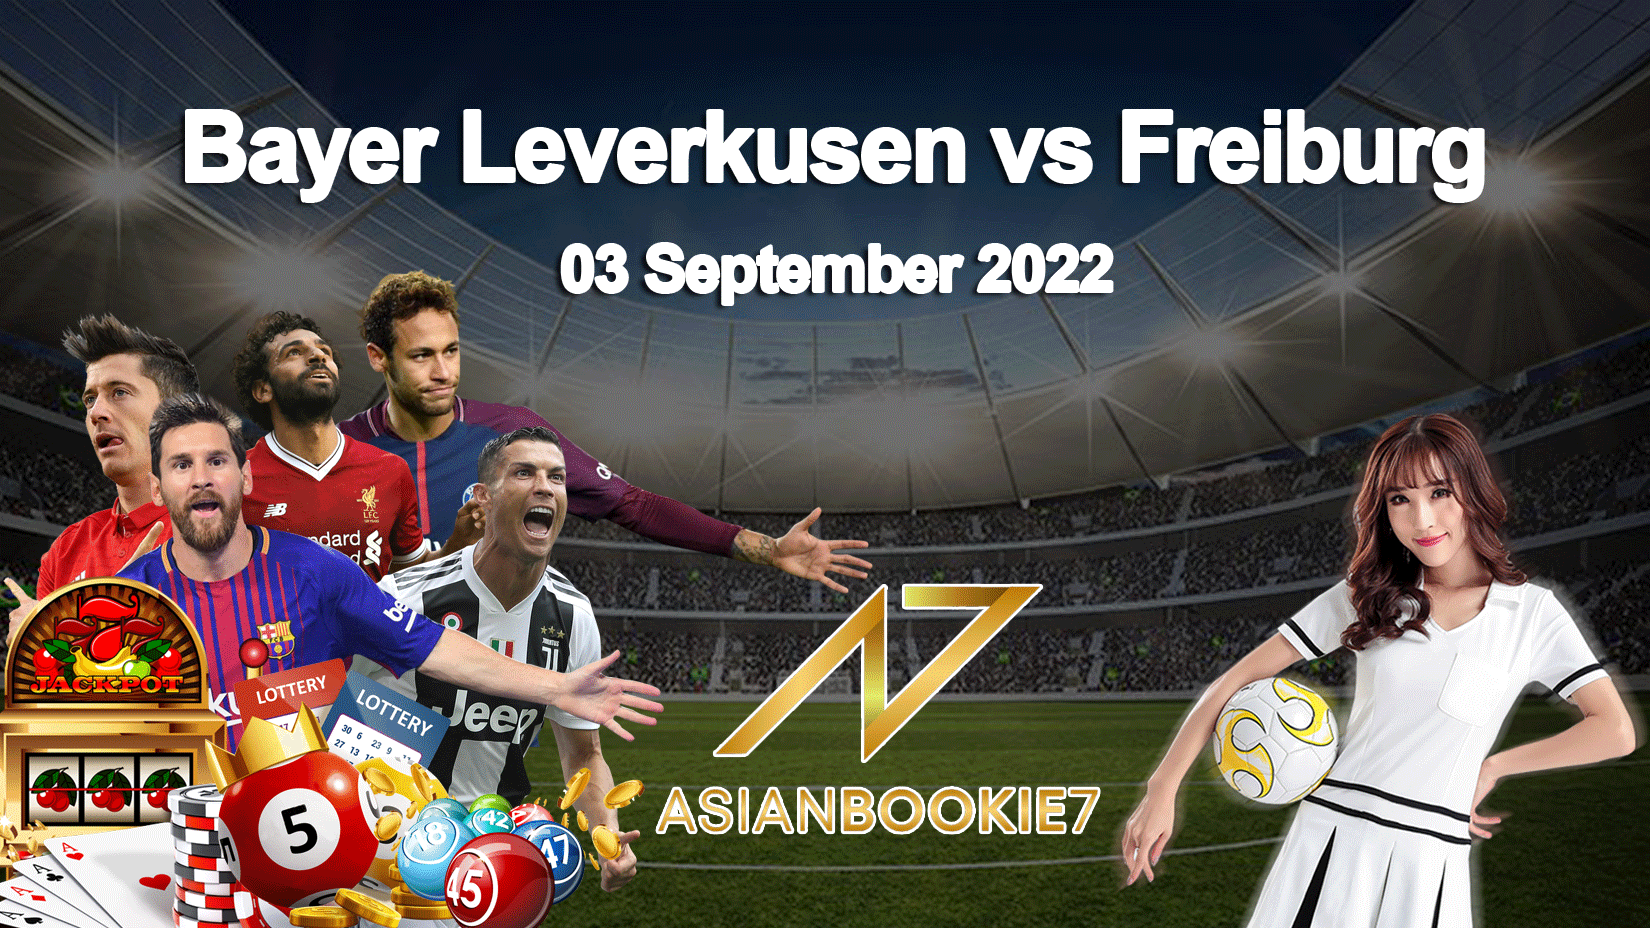 Prediksi Bayer Leverkusen vs Freiburg 03 September 2022